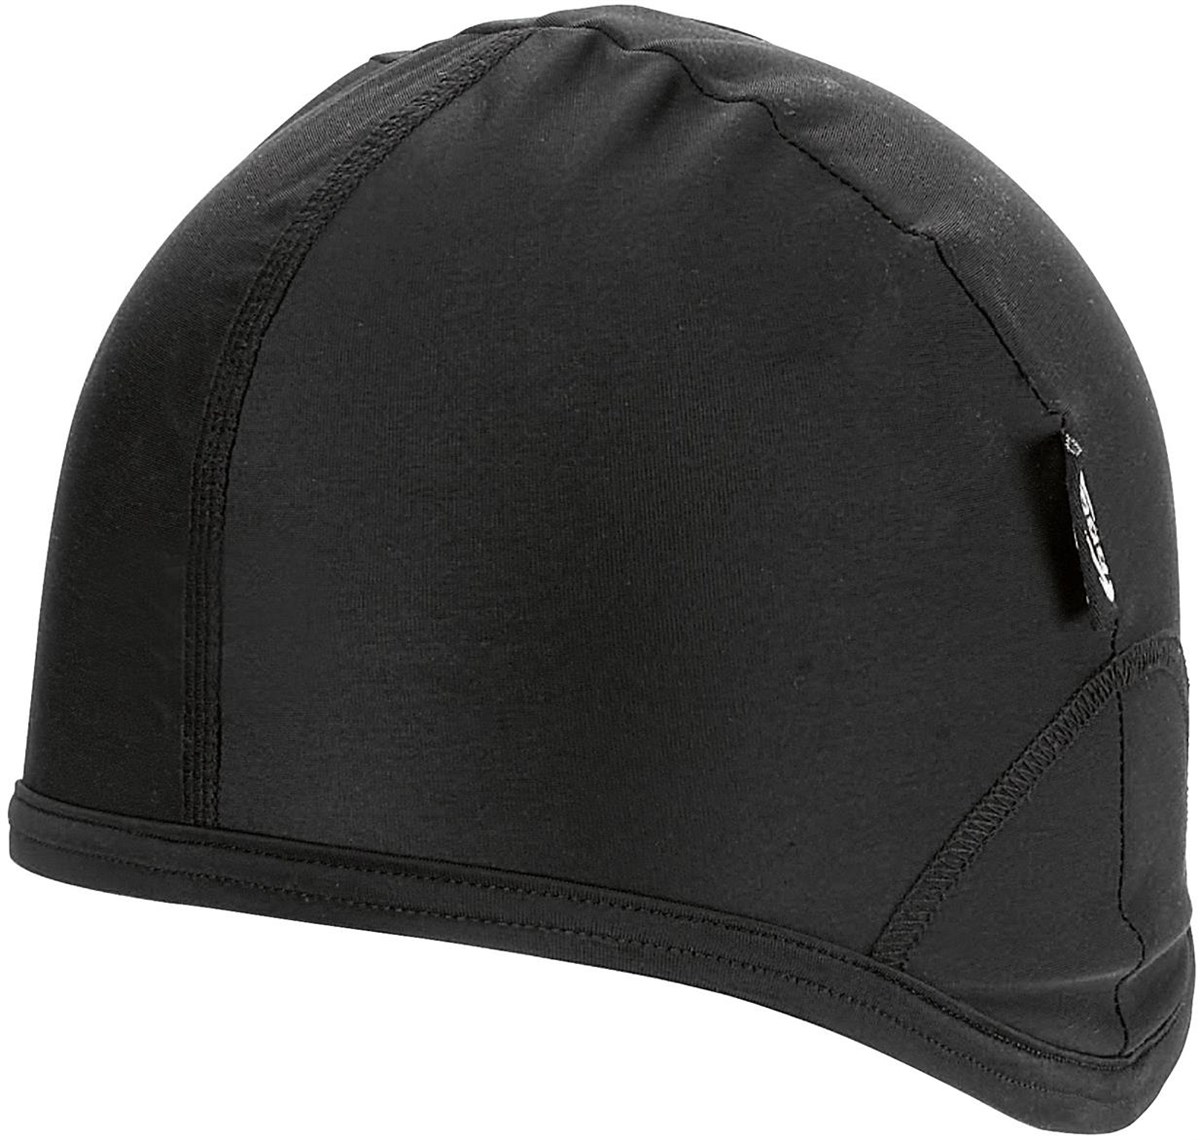 BBB BBW-97 - Winter Helmet Hat